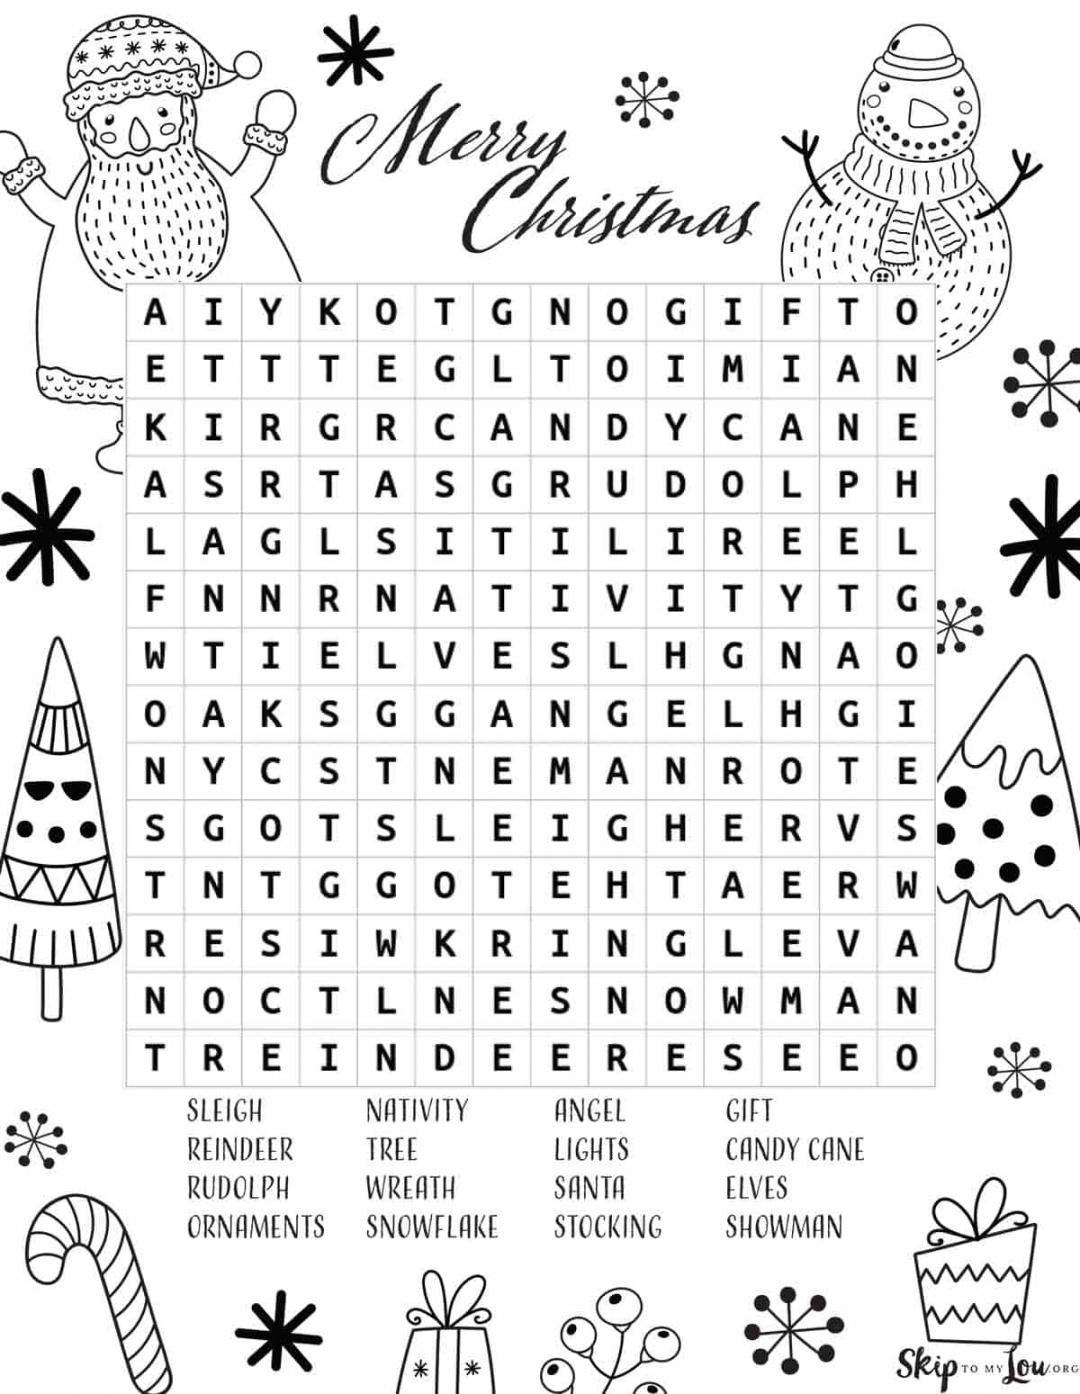 Christmas Word Search Free Printable - Printable - Christmas Word Search  Skip To My Lou